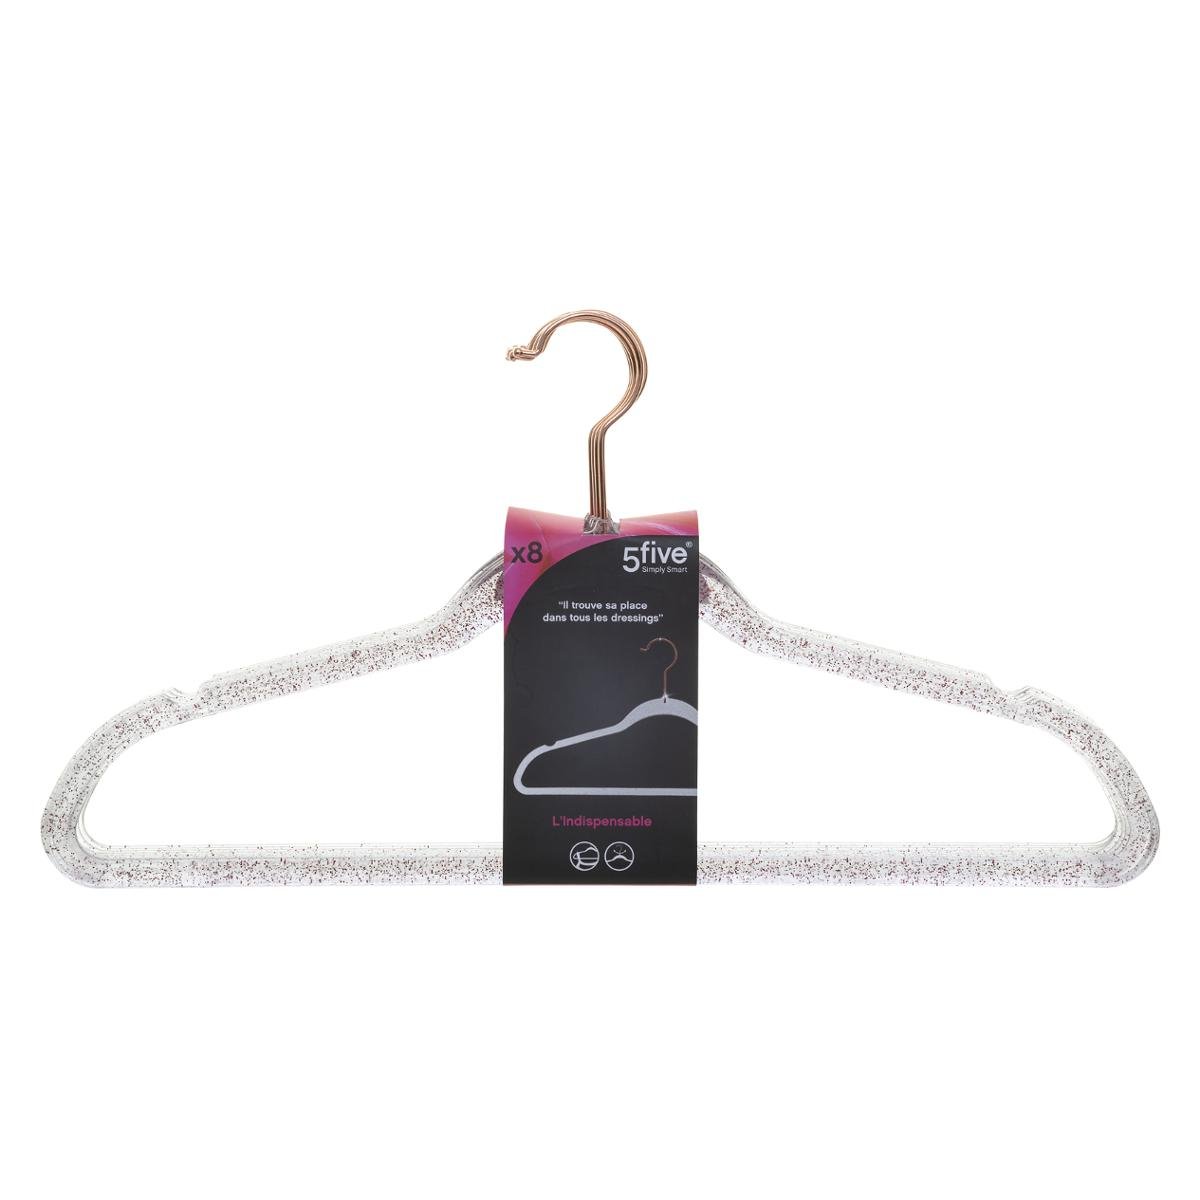 personnalisé en plastique Transparent cintres antidérapants peu encombrant  costume cintres paillettes acrylique or poudre perle cintre